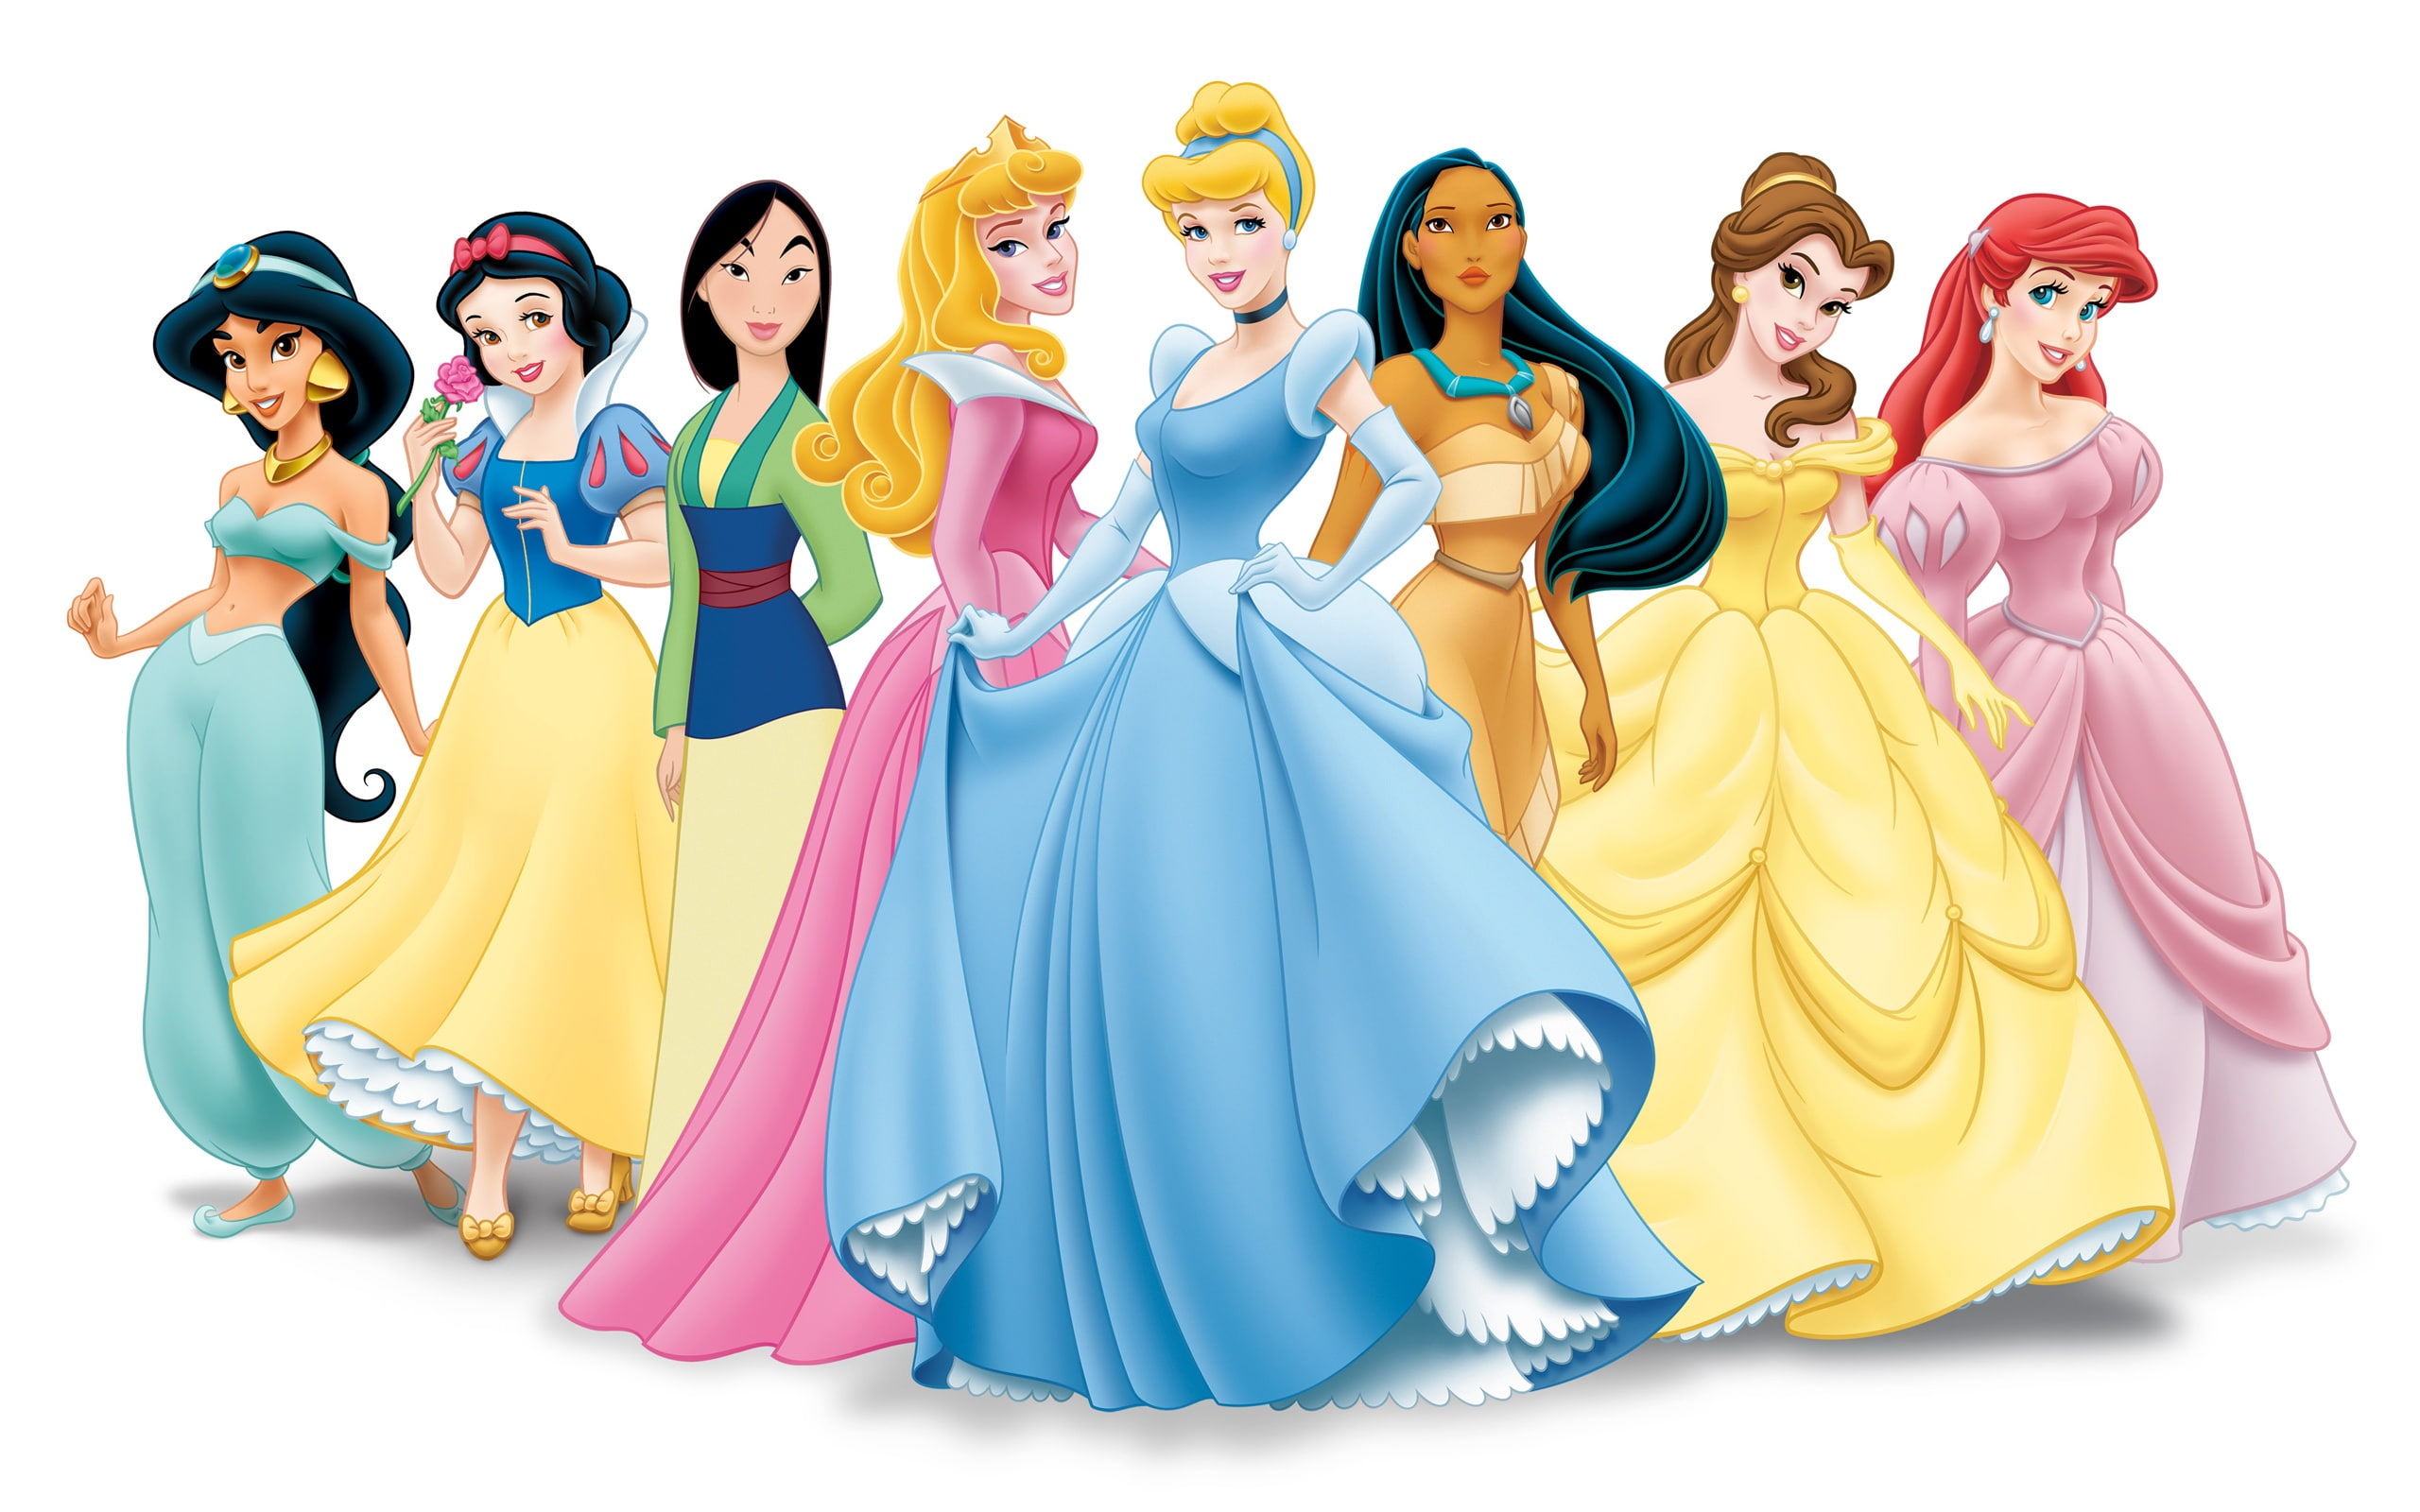 Disney cartoon princesses photo, disney princesses artwork